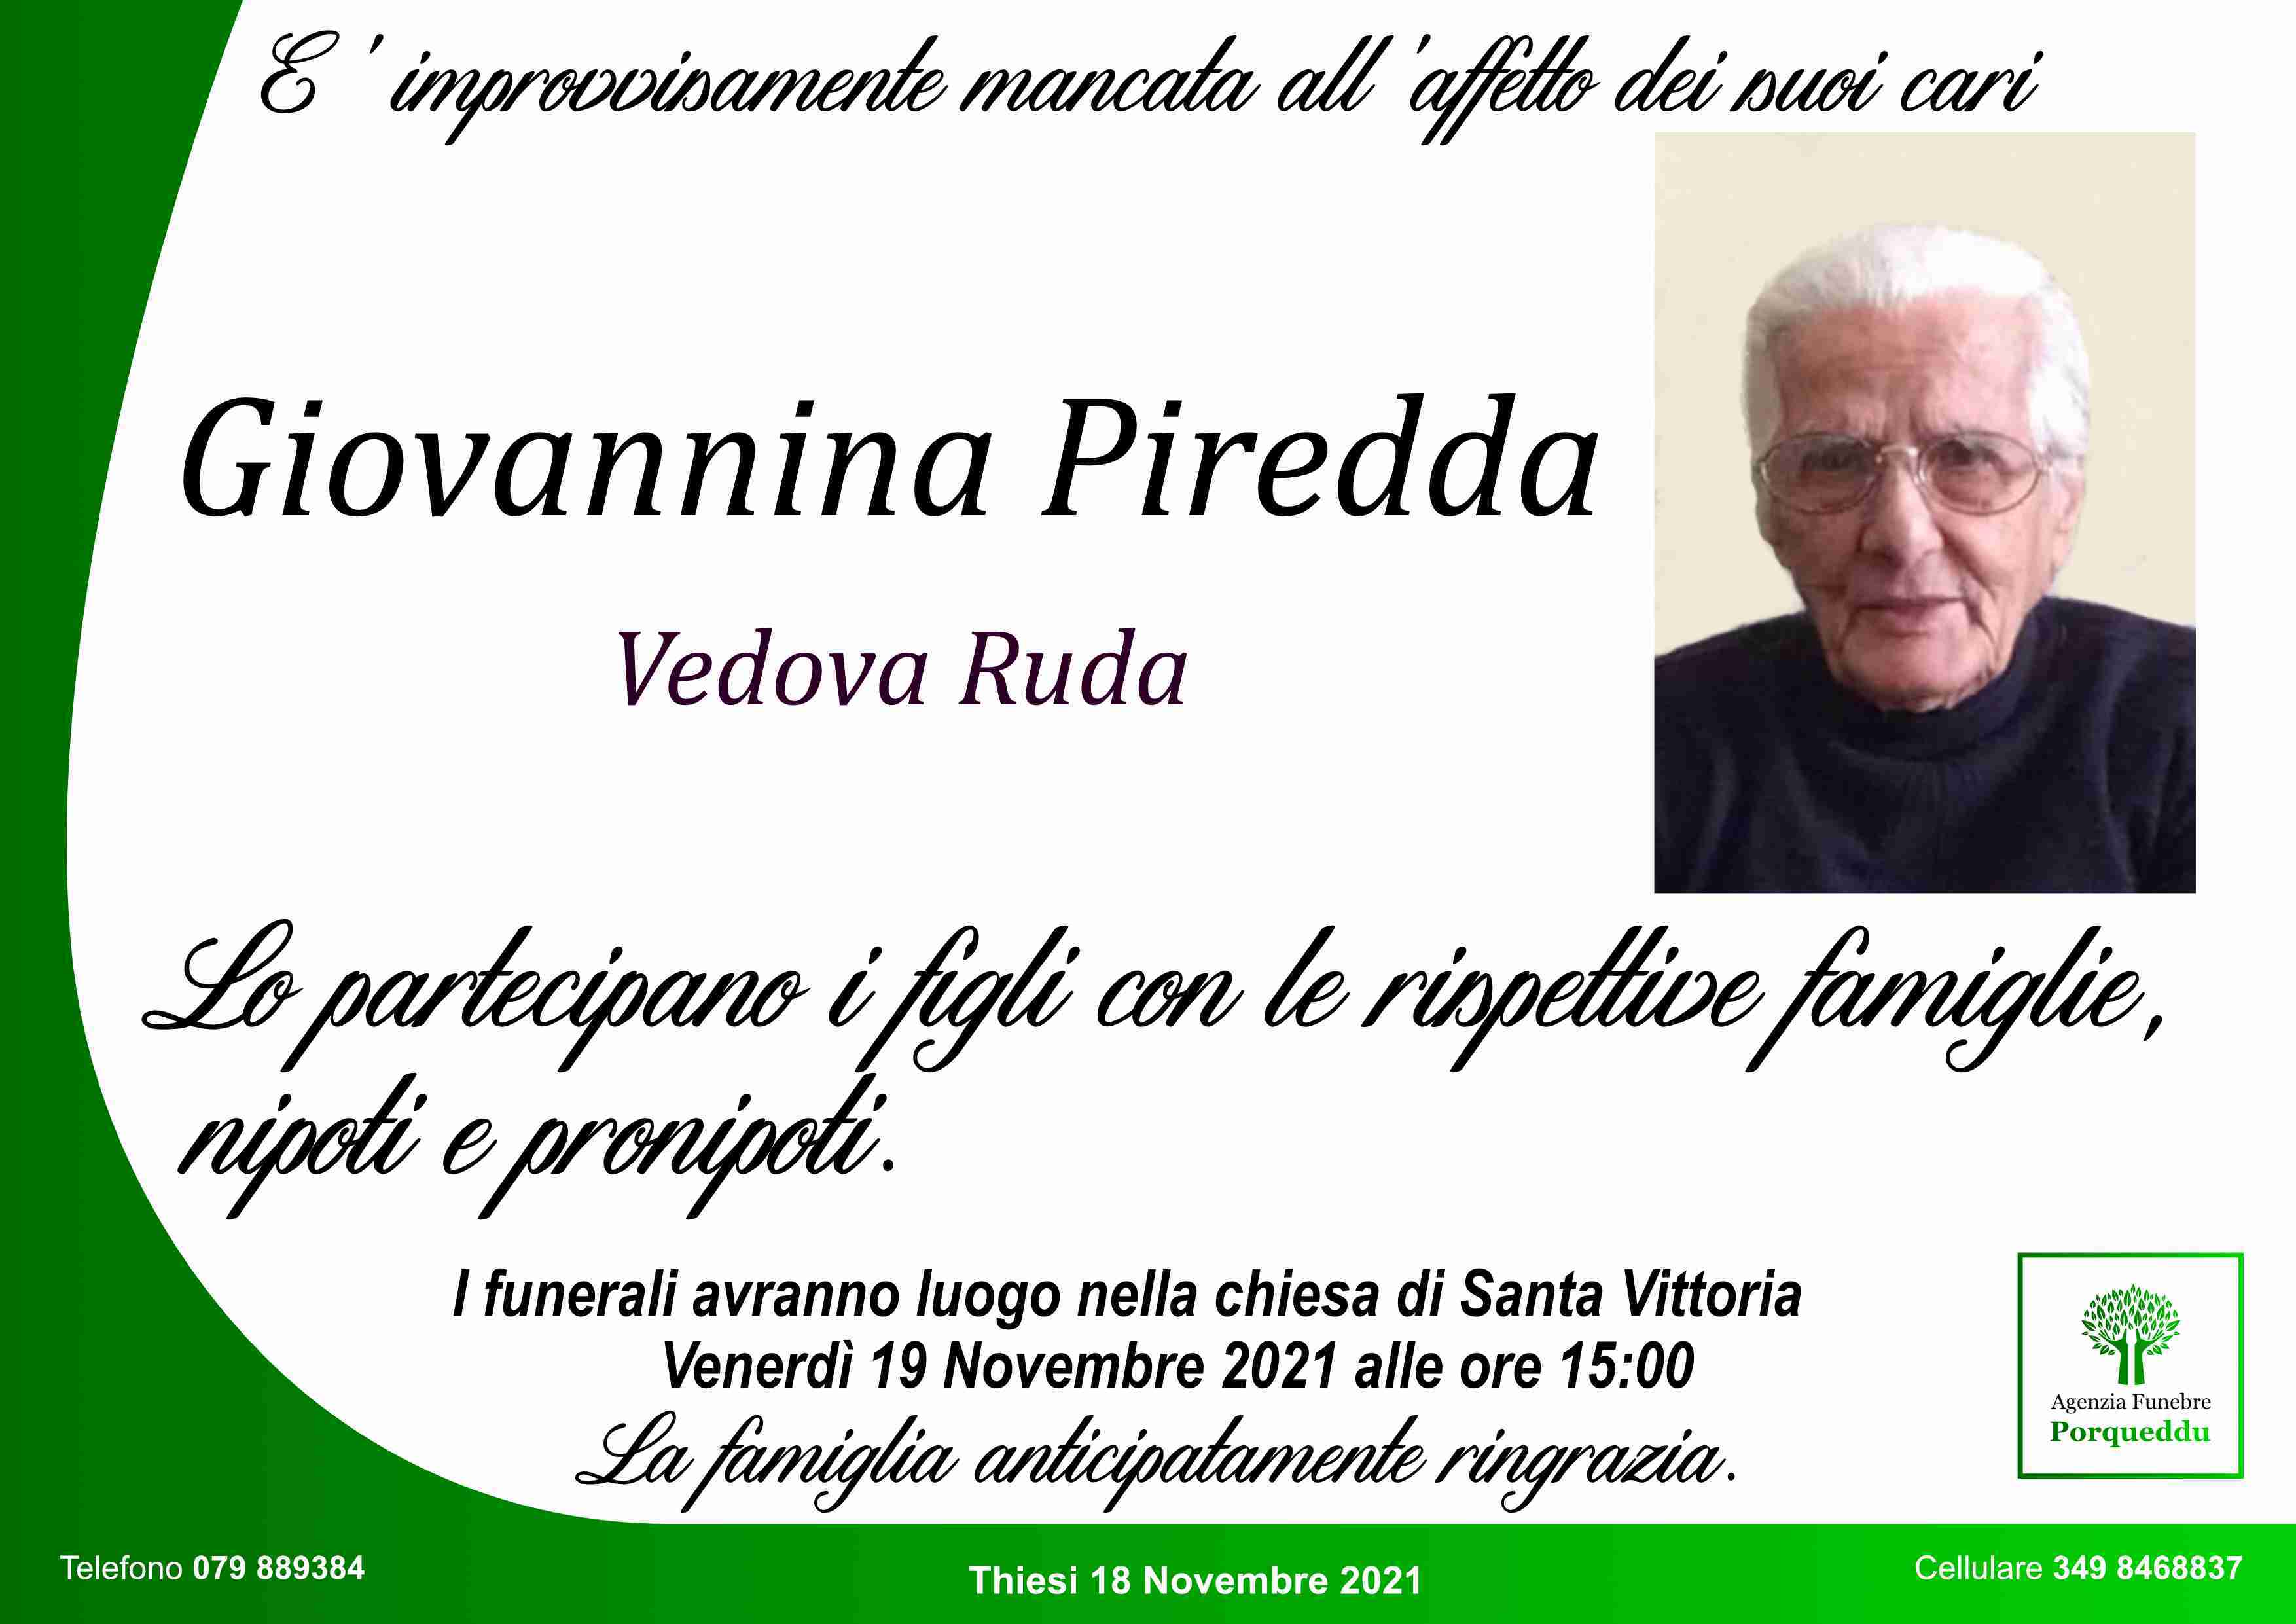 Giovannina Piredda